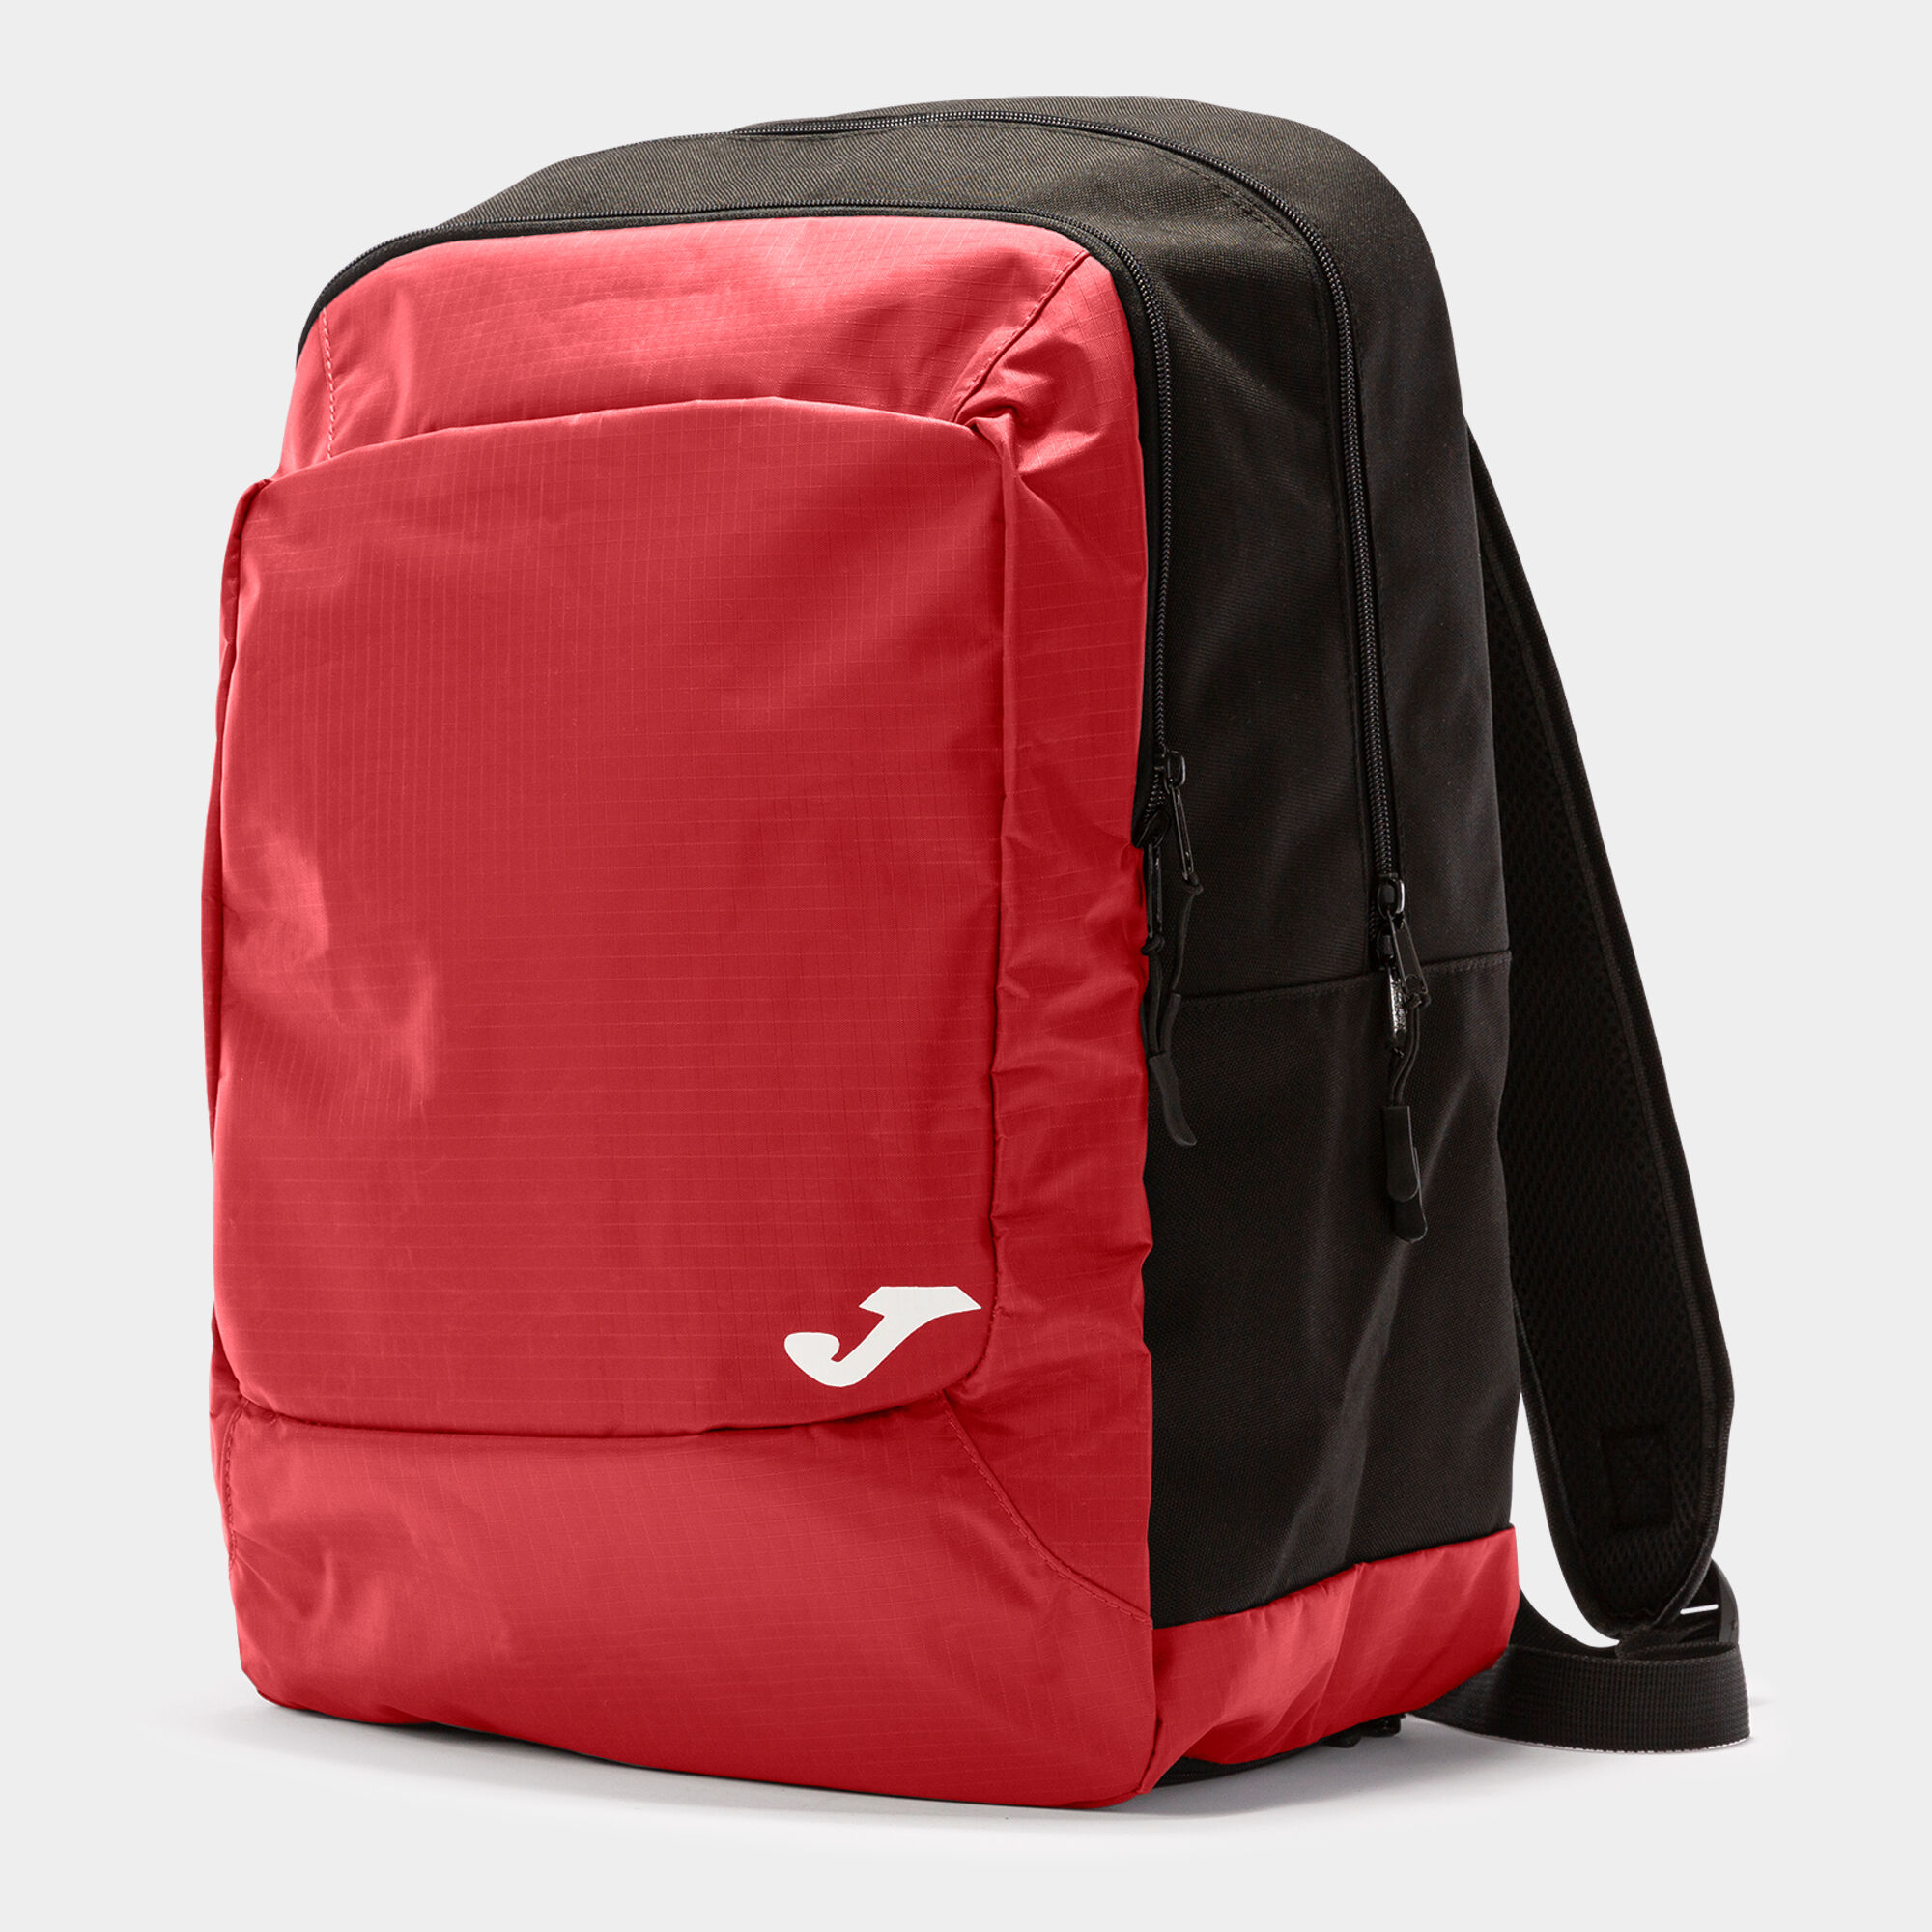 Backpack - shoe bag Team black red